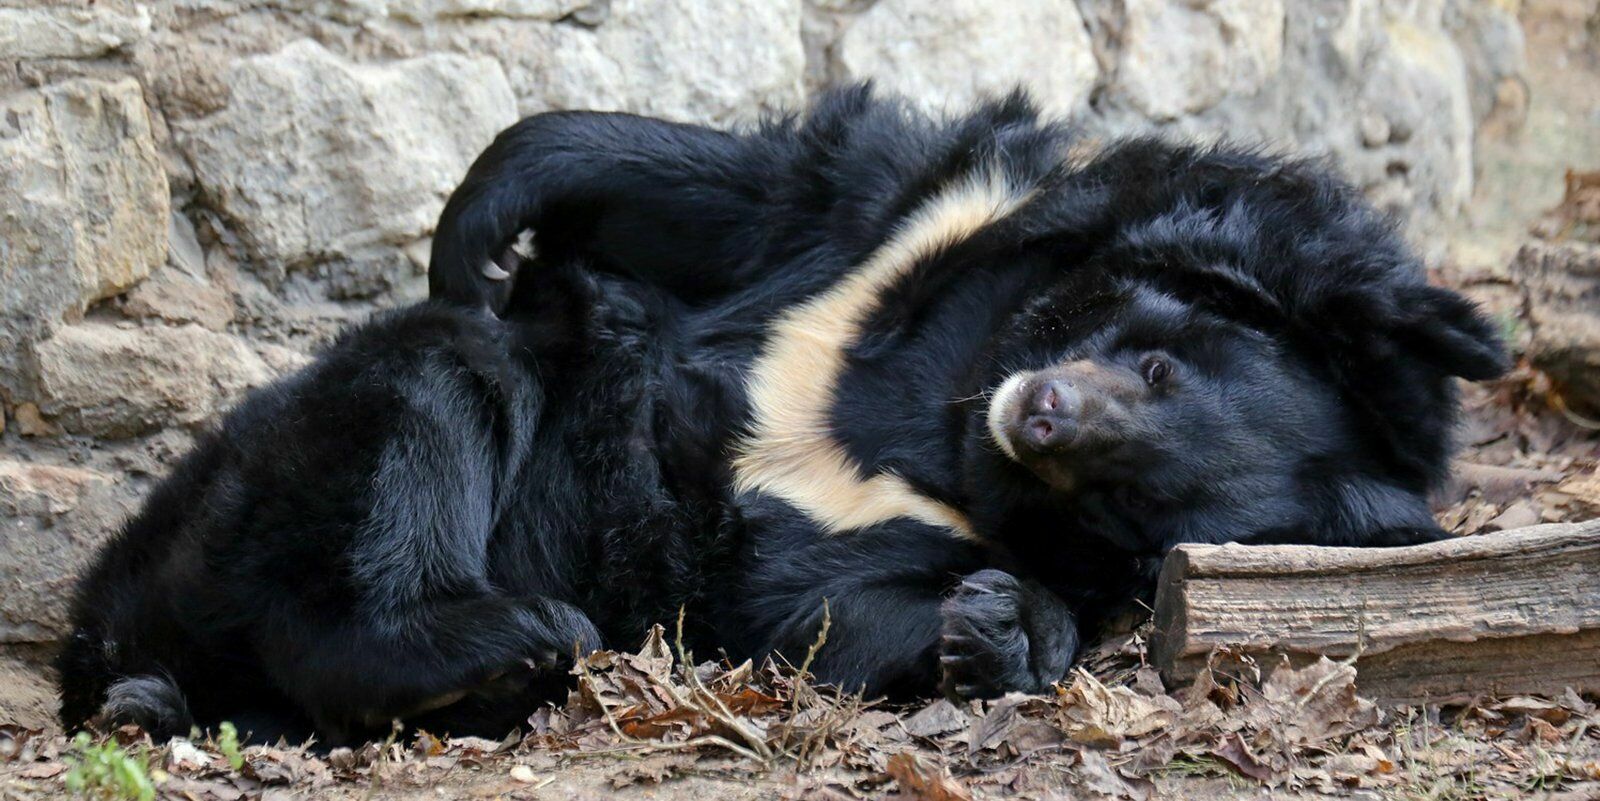 Гималайская медведица умерла во время зимней спячки в Московском зоопарке